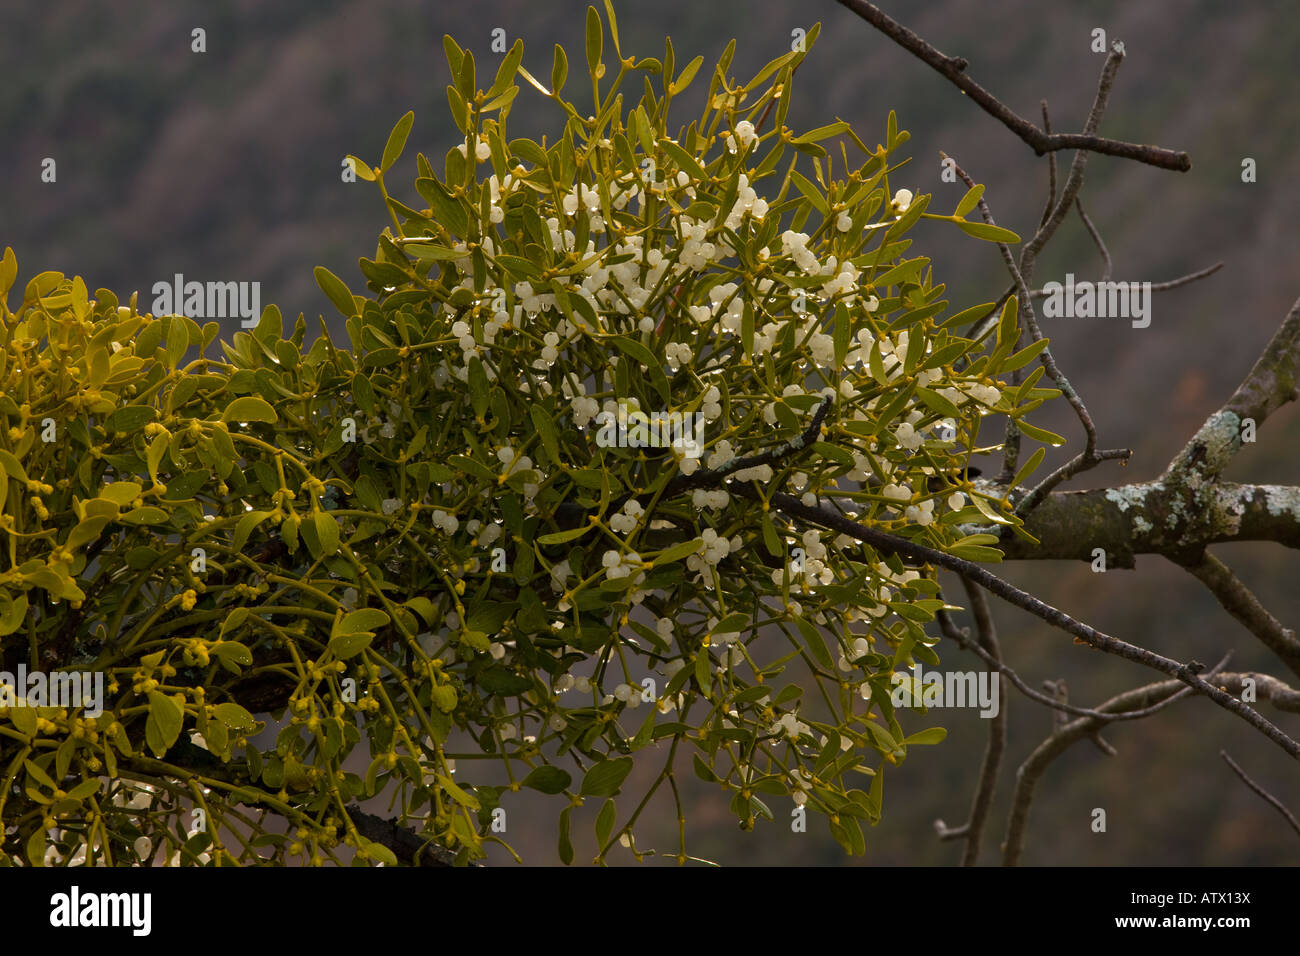 Mistletoe Viscum album parasitic plant on trees With berries Stock Photo